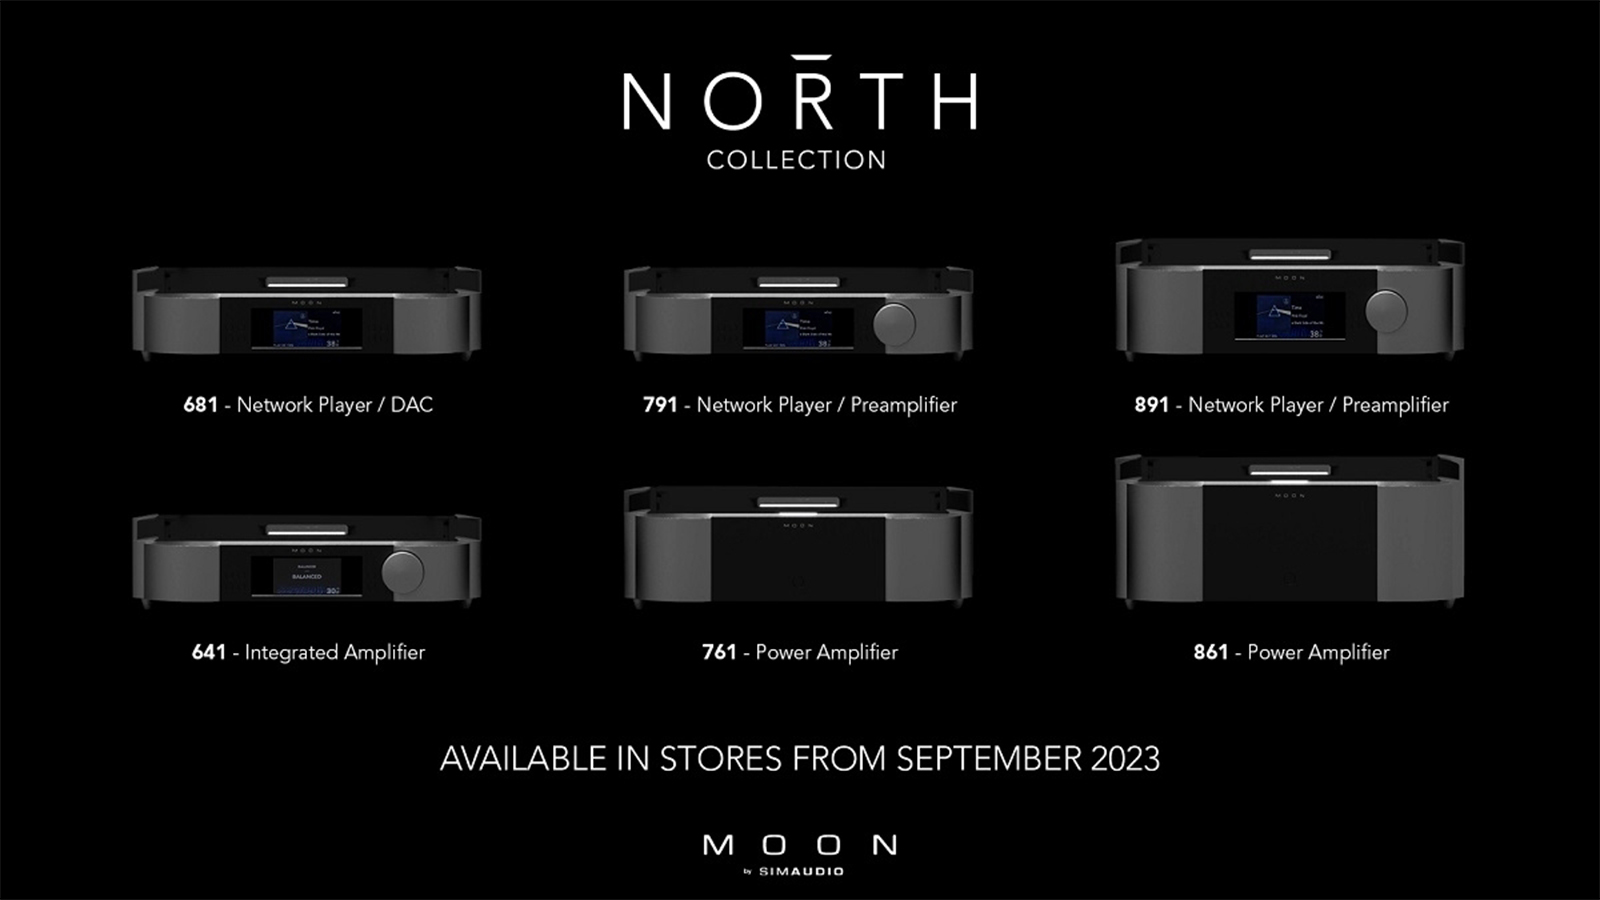 Trình làng loạt thiết bị hi-end MOON North Collection mới - Đổi mới từ thiết kế, cấu trúc cho đến công nghệ tiên tiến